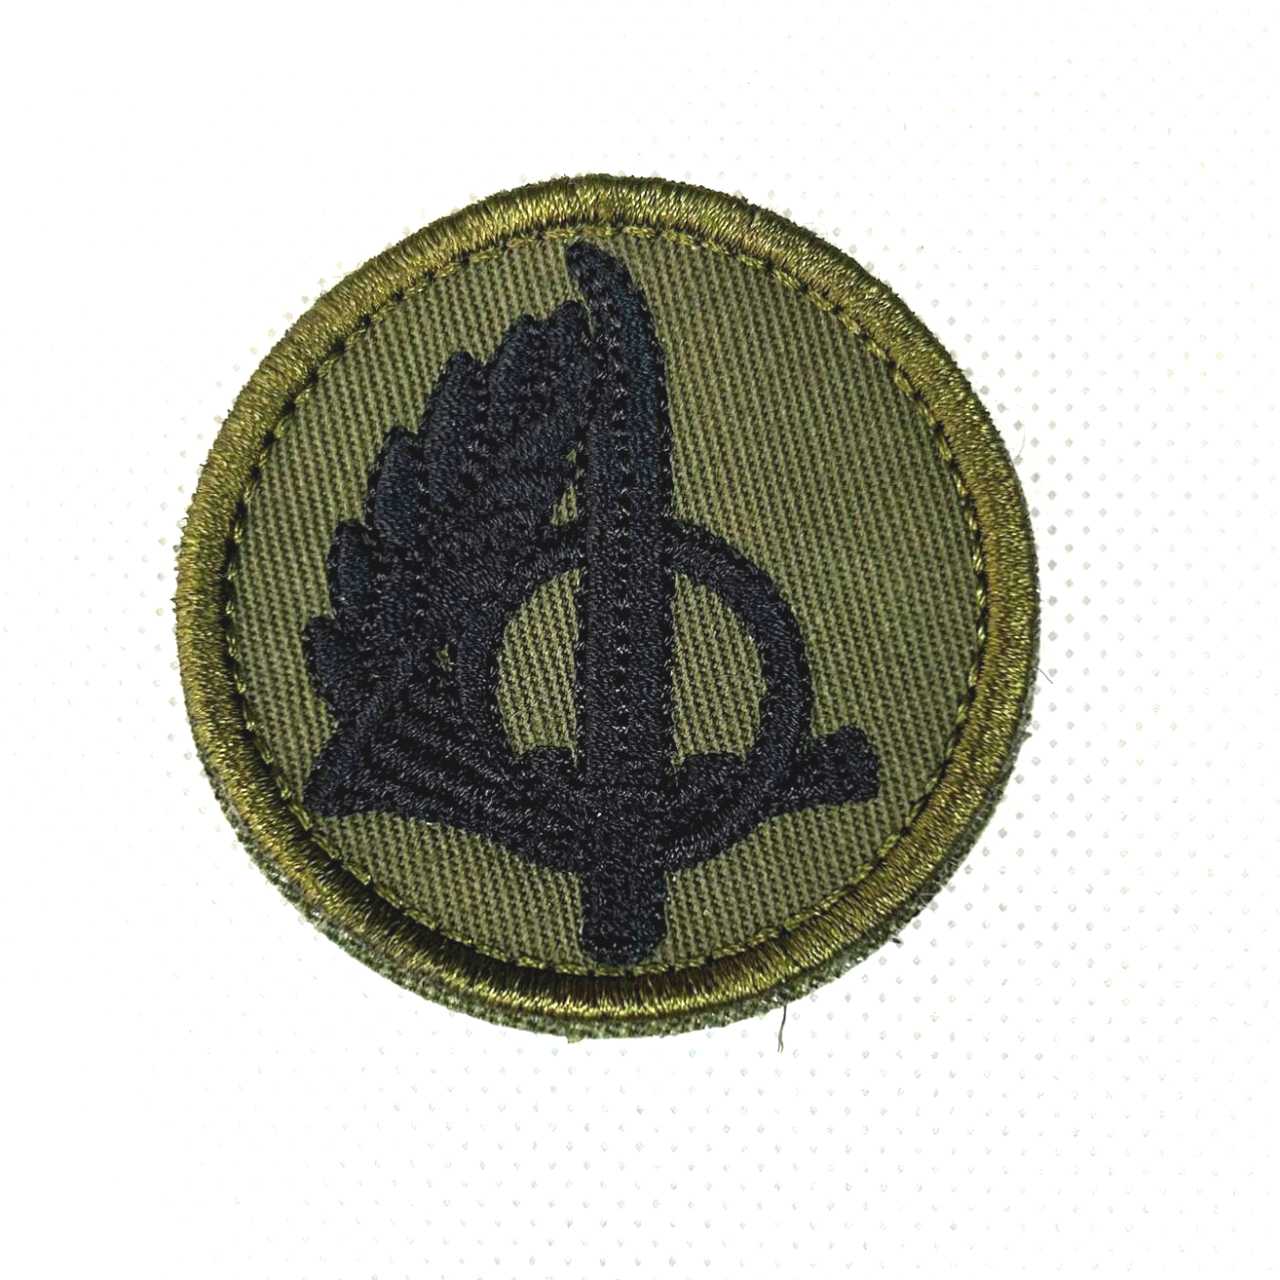 Patch distintivo boina Operações especiais /Ranger